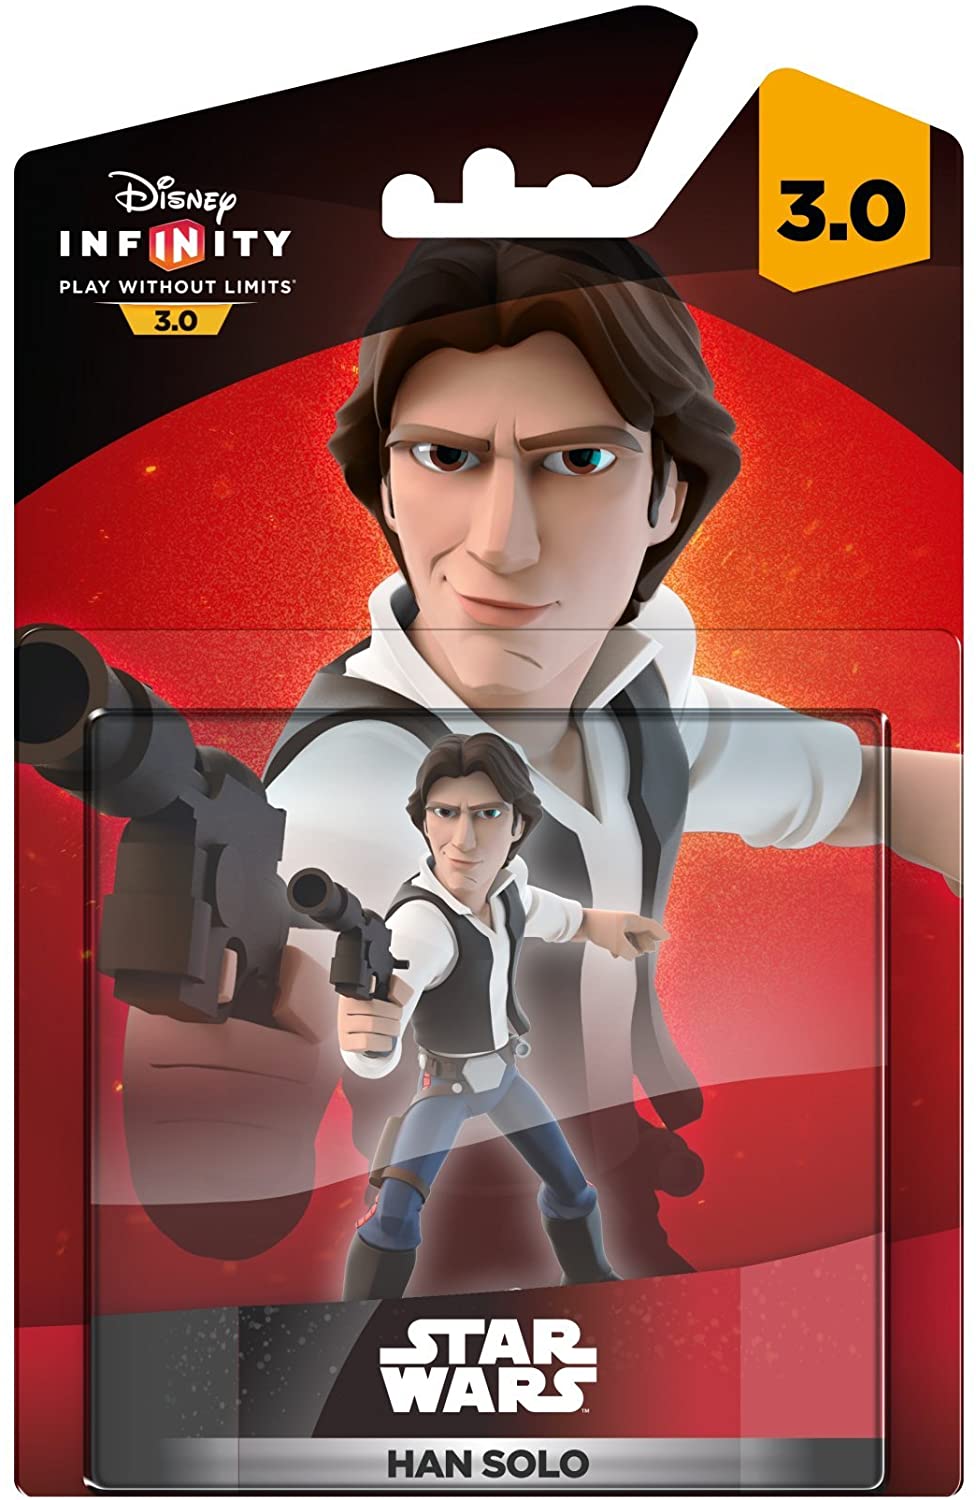 Disney Infinity 3.0: Star Wars Han Solo Figure